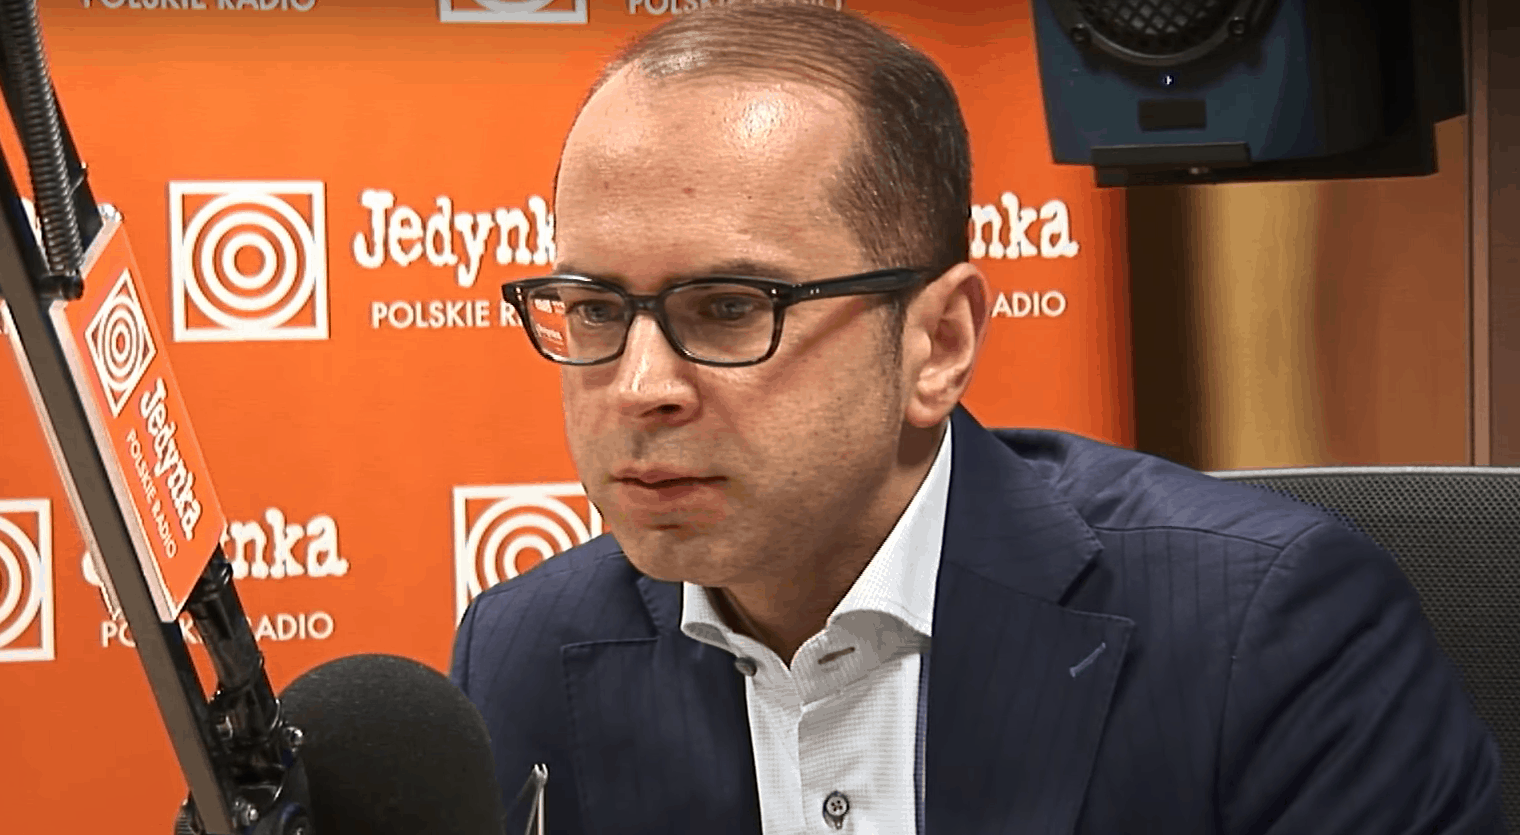 Michał Szczerba to jeden z najbardziej kontrowersyjnych polityków Platformy Obywatelskiej (PO), kontra Grzegorz Janko w Polskim Radiu.